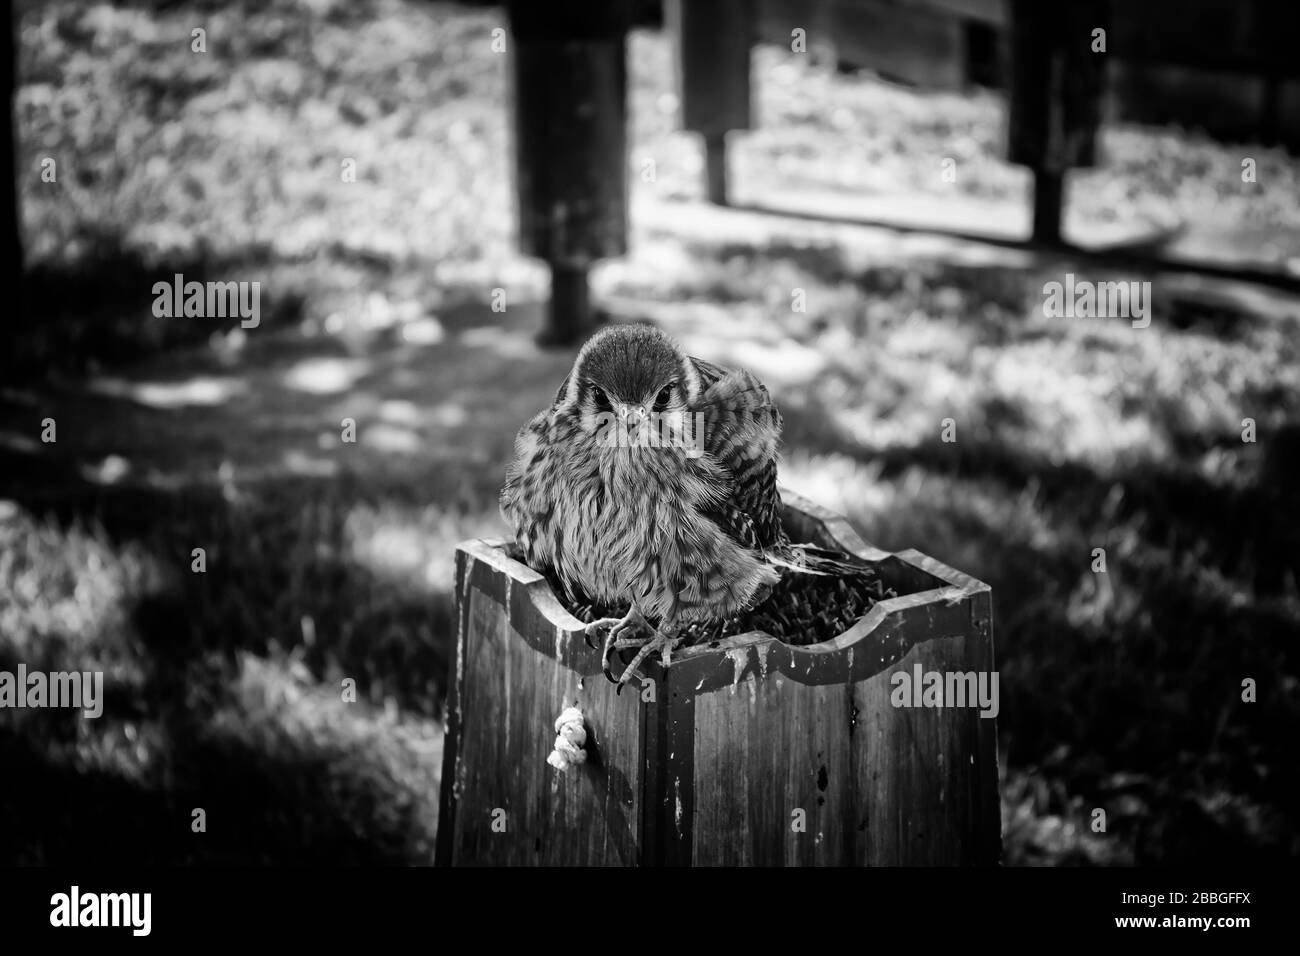 Eagle small prey in falconry field, wild animals Stock Photo